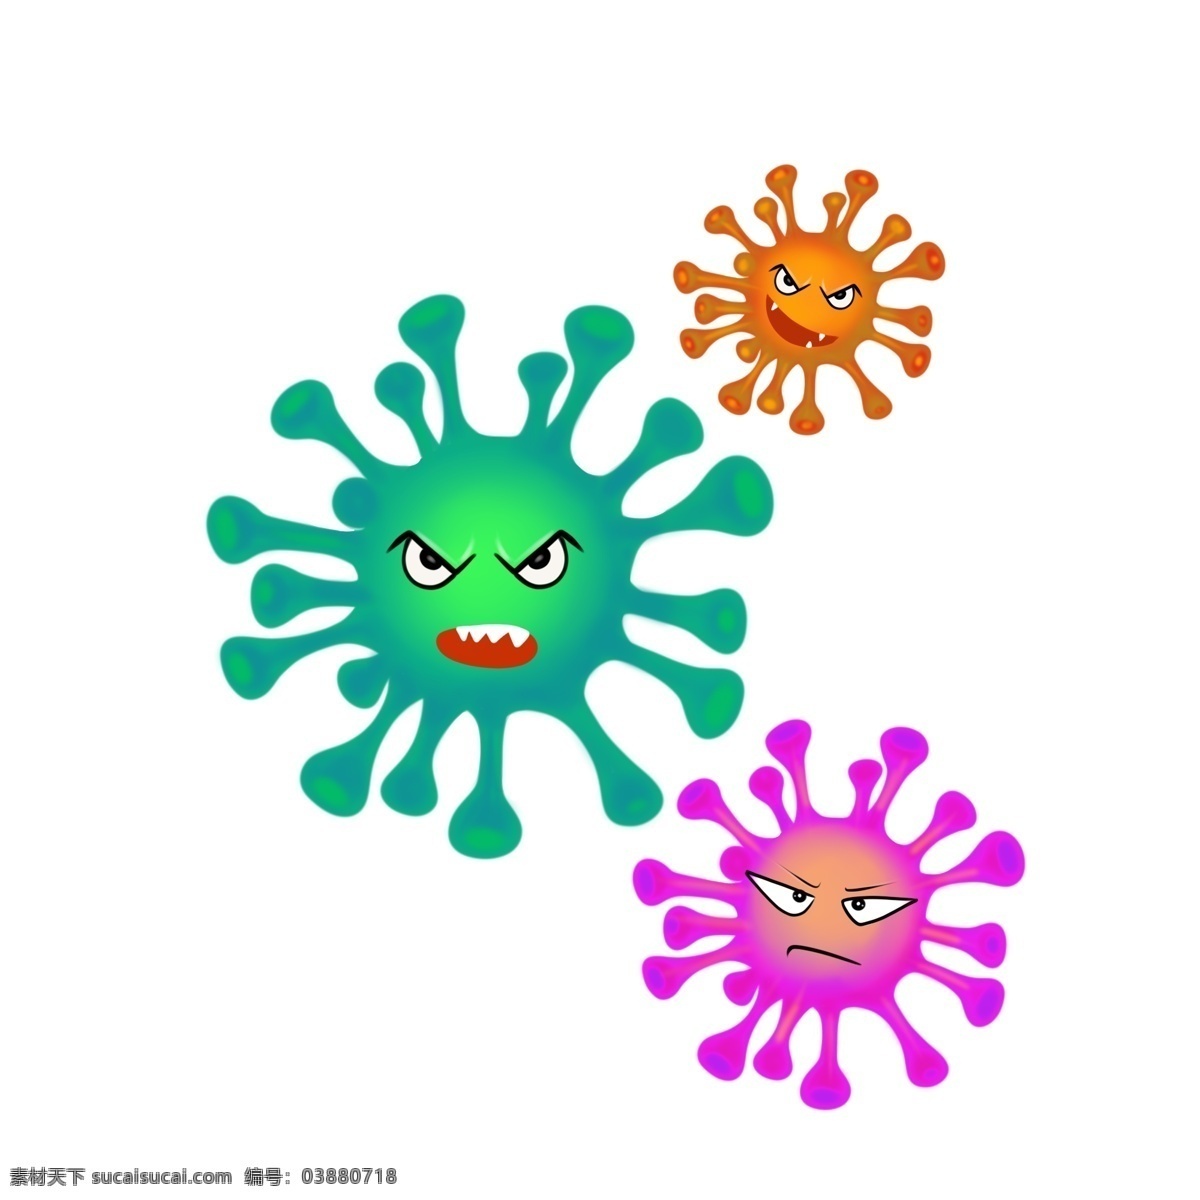 手绘细菌病毒 恶魔病毒 病毒 恶魔细菌 细菌 分层病毒 病毒细菌 预防病毒 细菌感染 预防病毒细菌 手绘 橙色色细菌 彩色病毒 卡通病毒 卡通细菌 分层